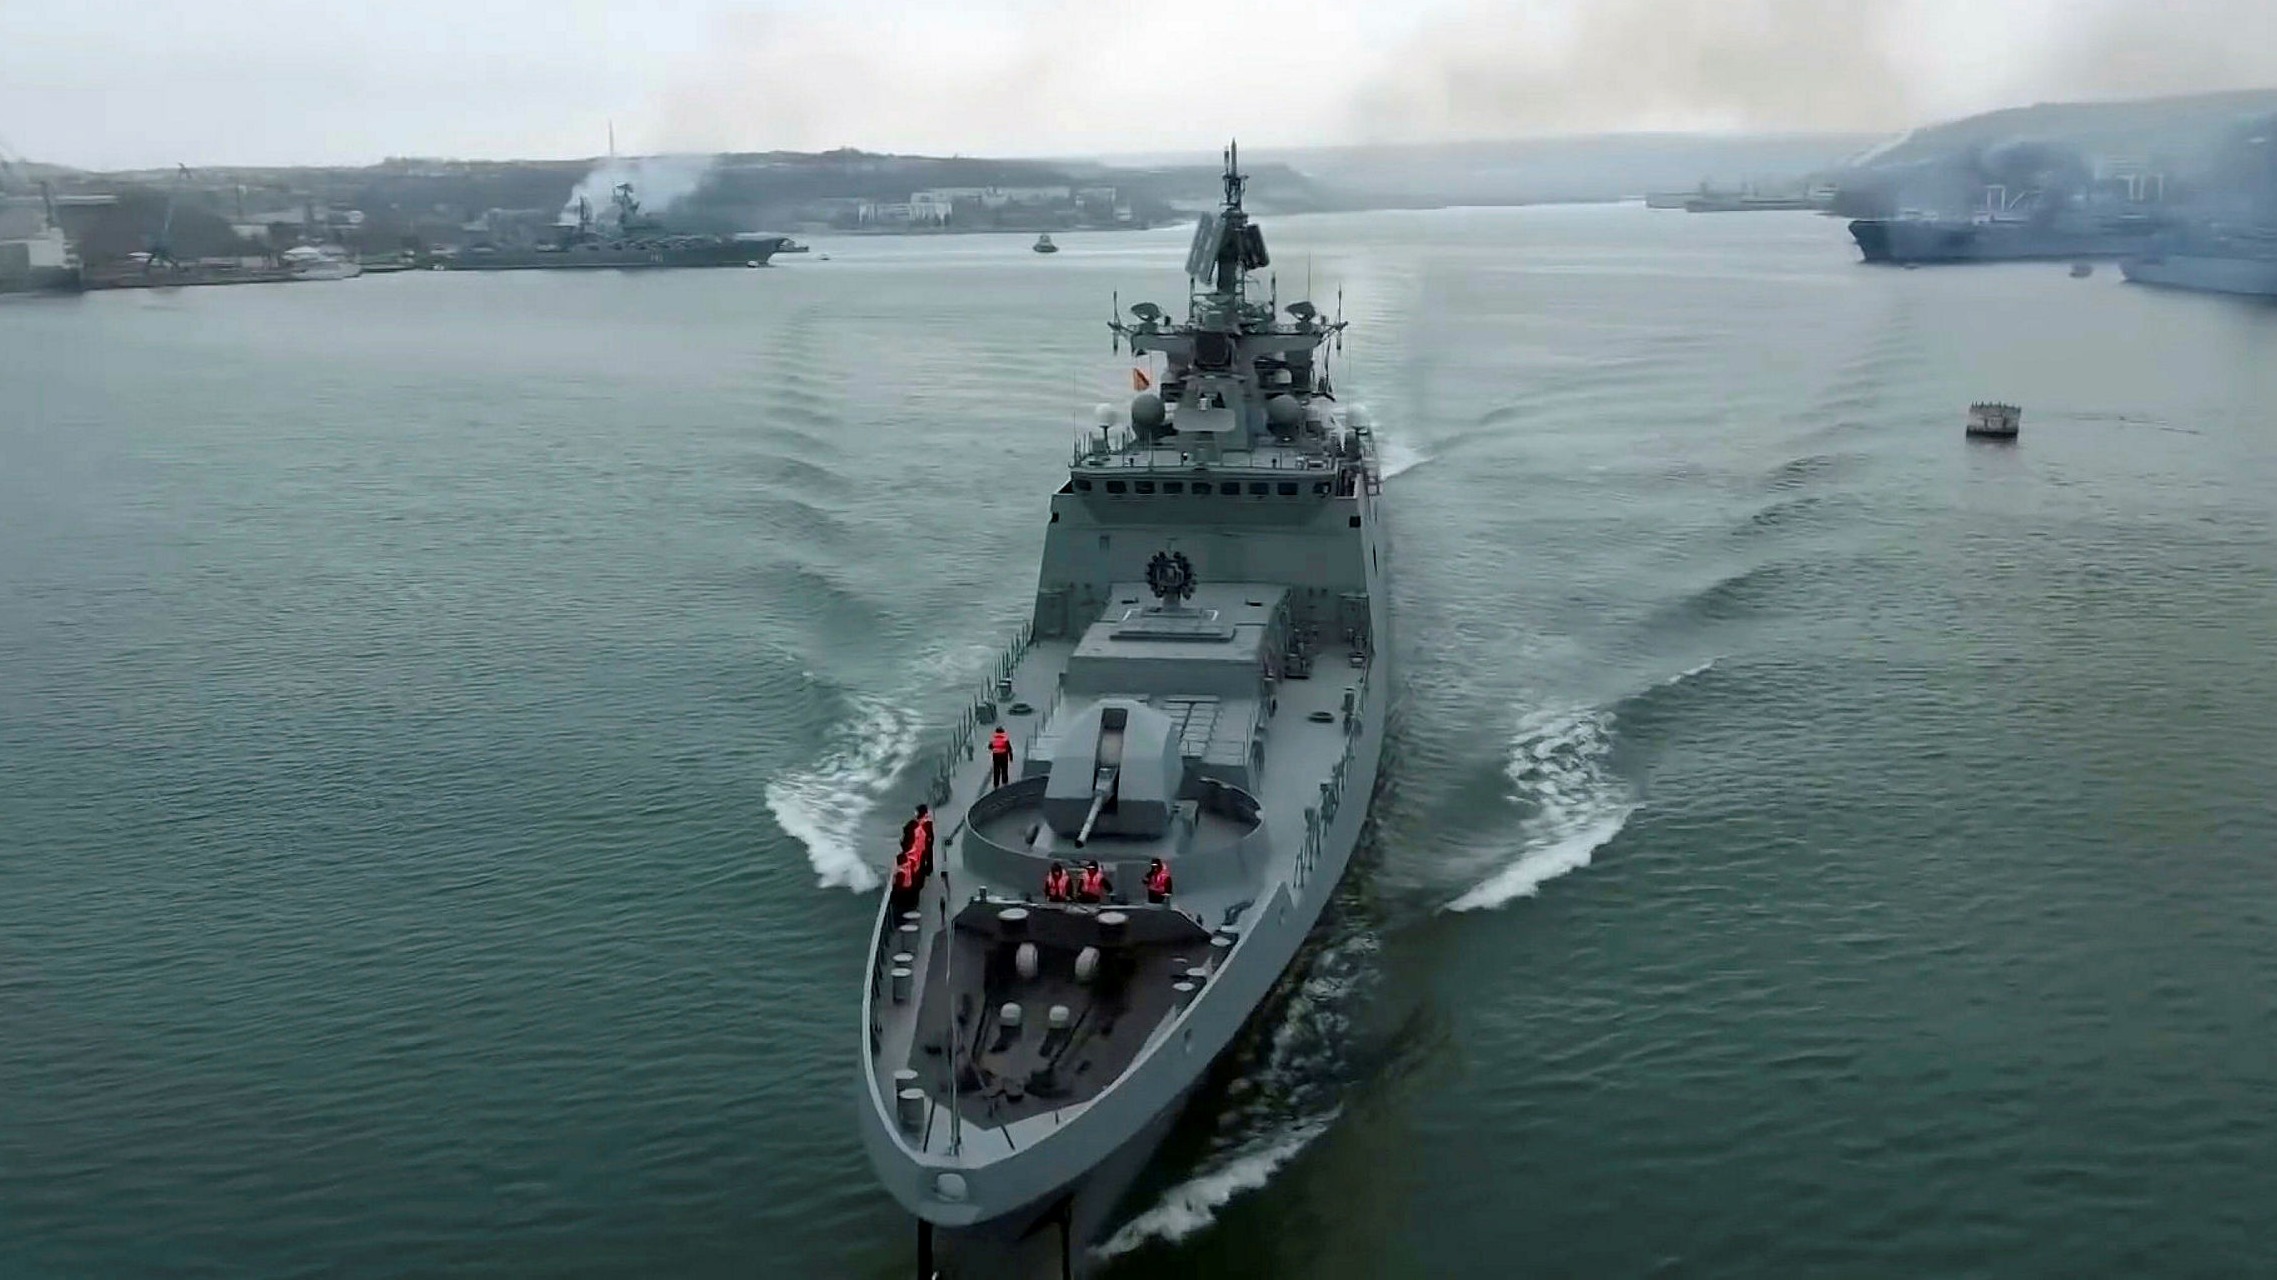 Κολοσσιαίο ναυπηγικό πρόγραμμα συμφώνησαν Ρωσία και Κίνα: Οι νέοι ρωσικοί πολεμικοί στόλοι θα ναυπηγηθούν από το Πεκίνο τα επόμενα 15 χρόνια